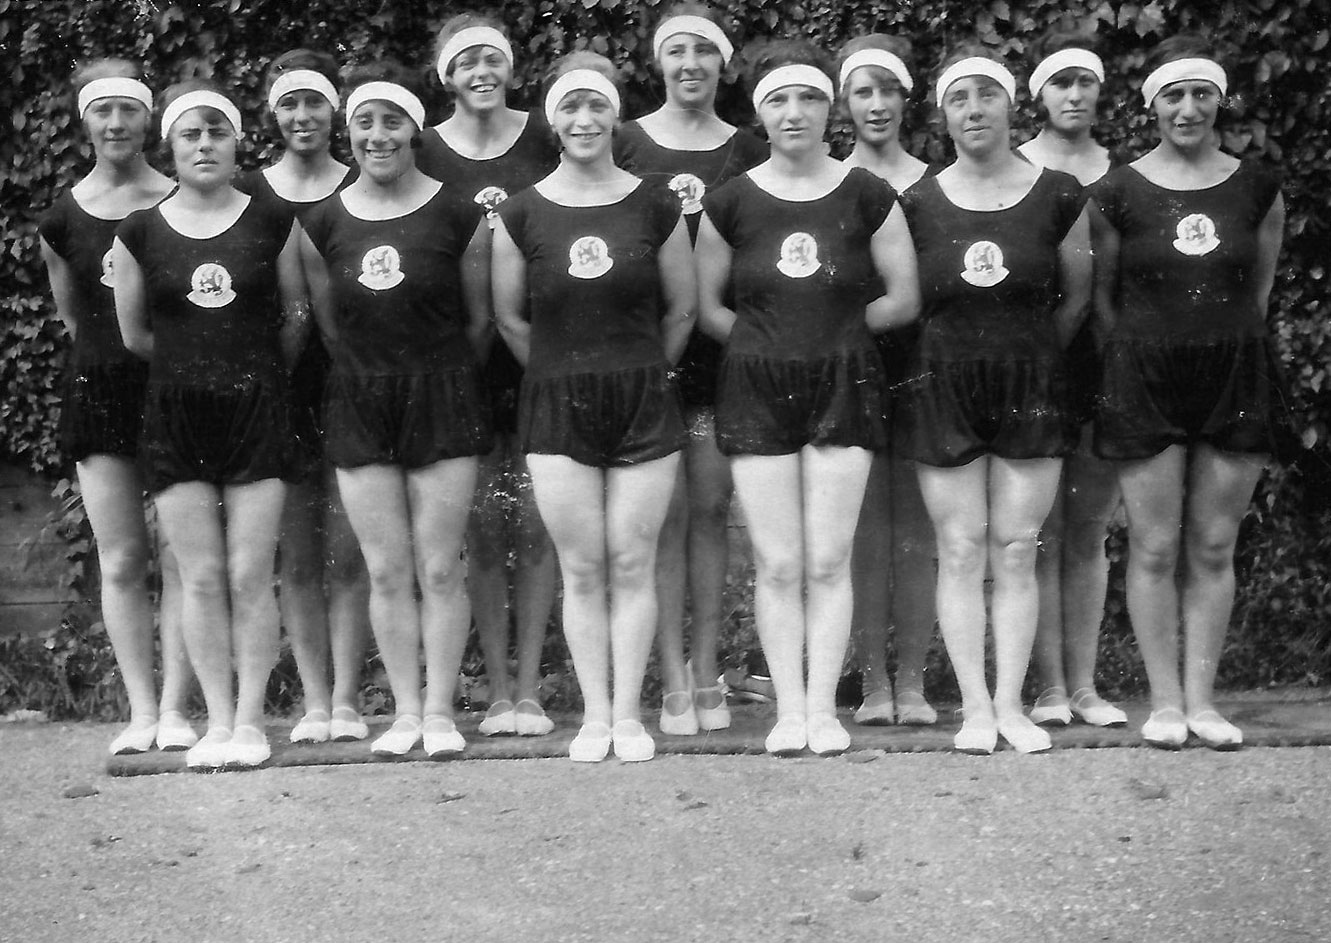 Die niederländische olympische Damenturnmannschaft bei den Olympischen Spielen 1928 in Amsterdam. Die Mannschaft gewann die Goldmedaille. Sowohl der Trainer als auch fünf der Turnerinnen waren jüdisch